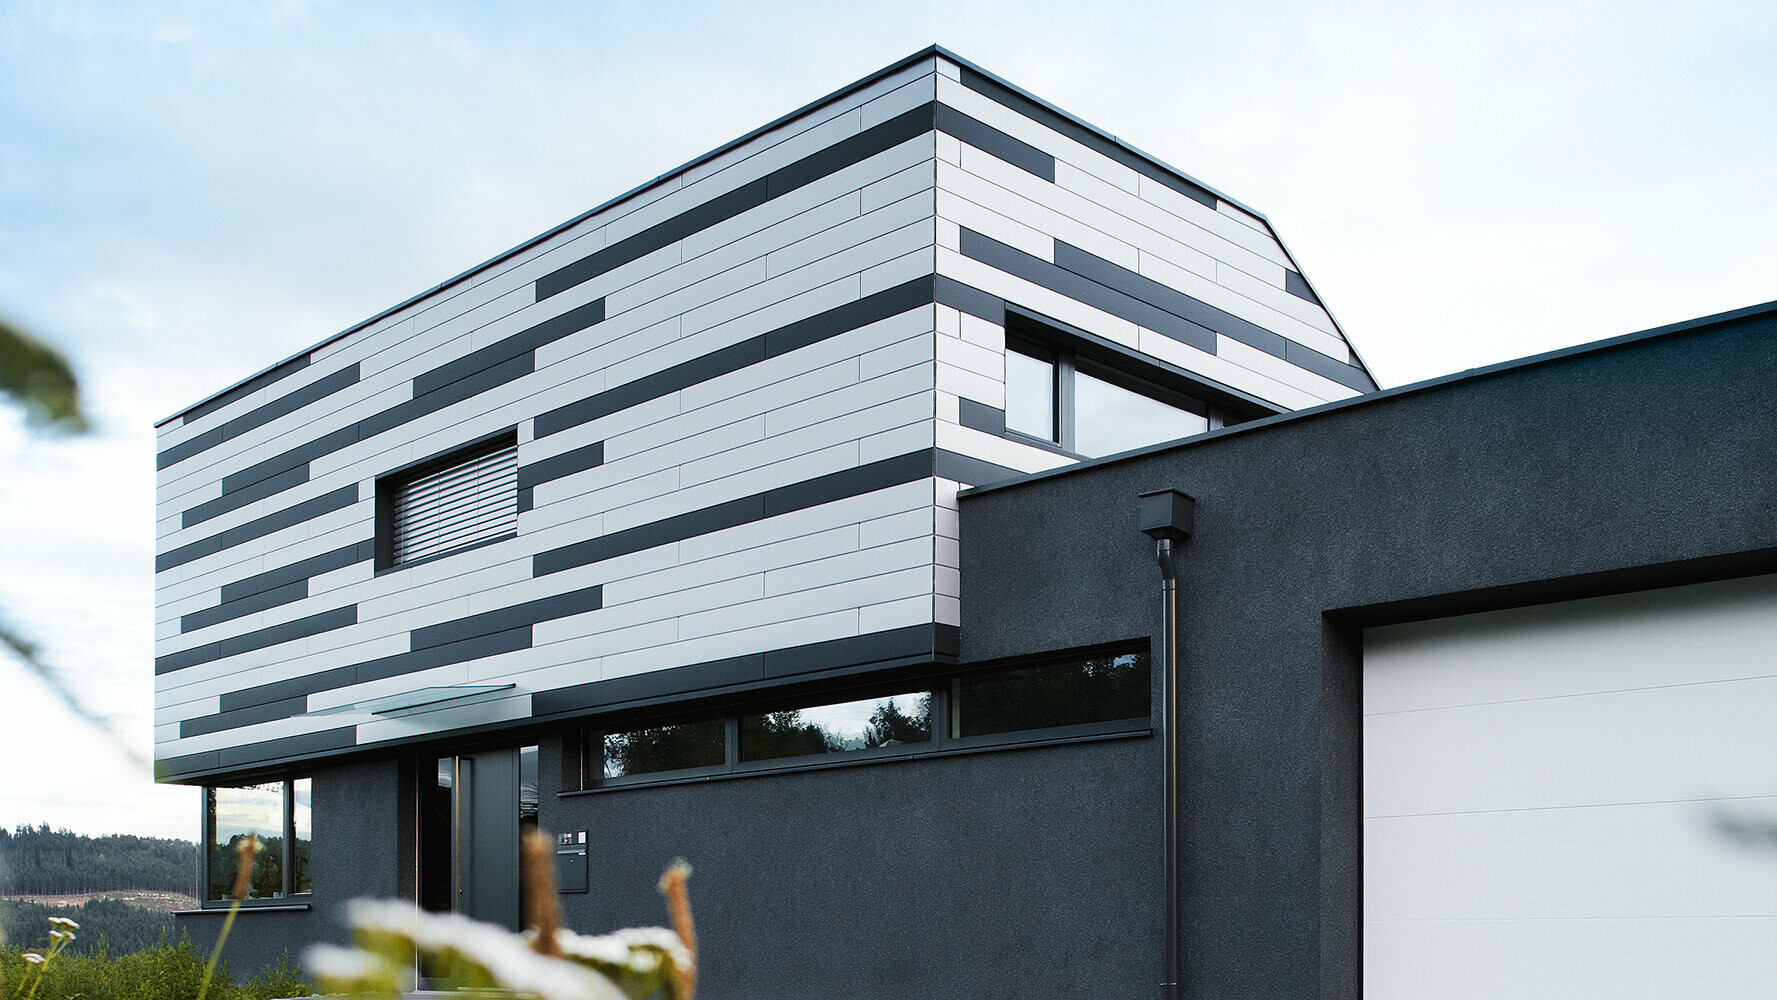 Moderný rodinný dom s kreatívnym dizajnom fasády; fasádne prvky PREFA Sidings boli položené striedaním farieb strieborná a antracitová matná.